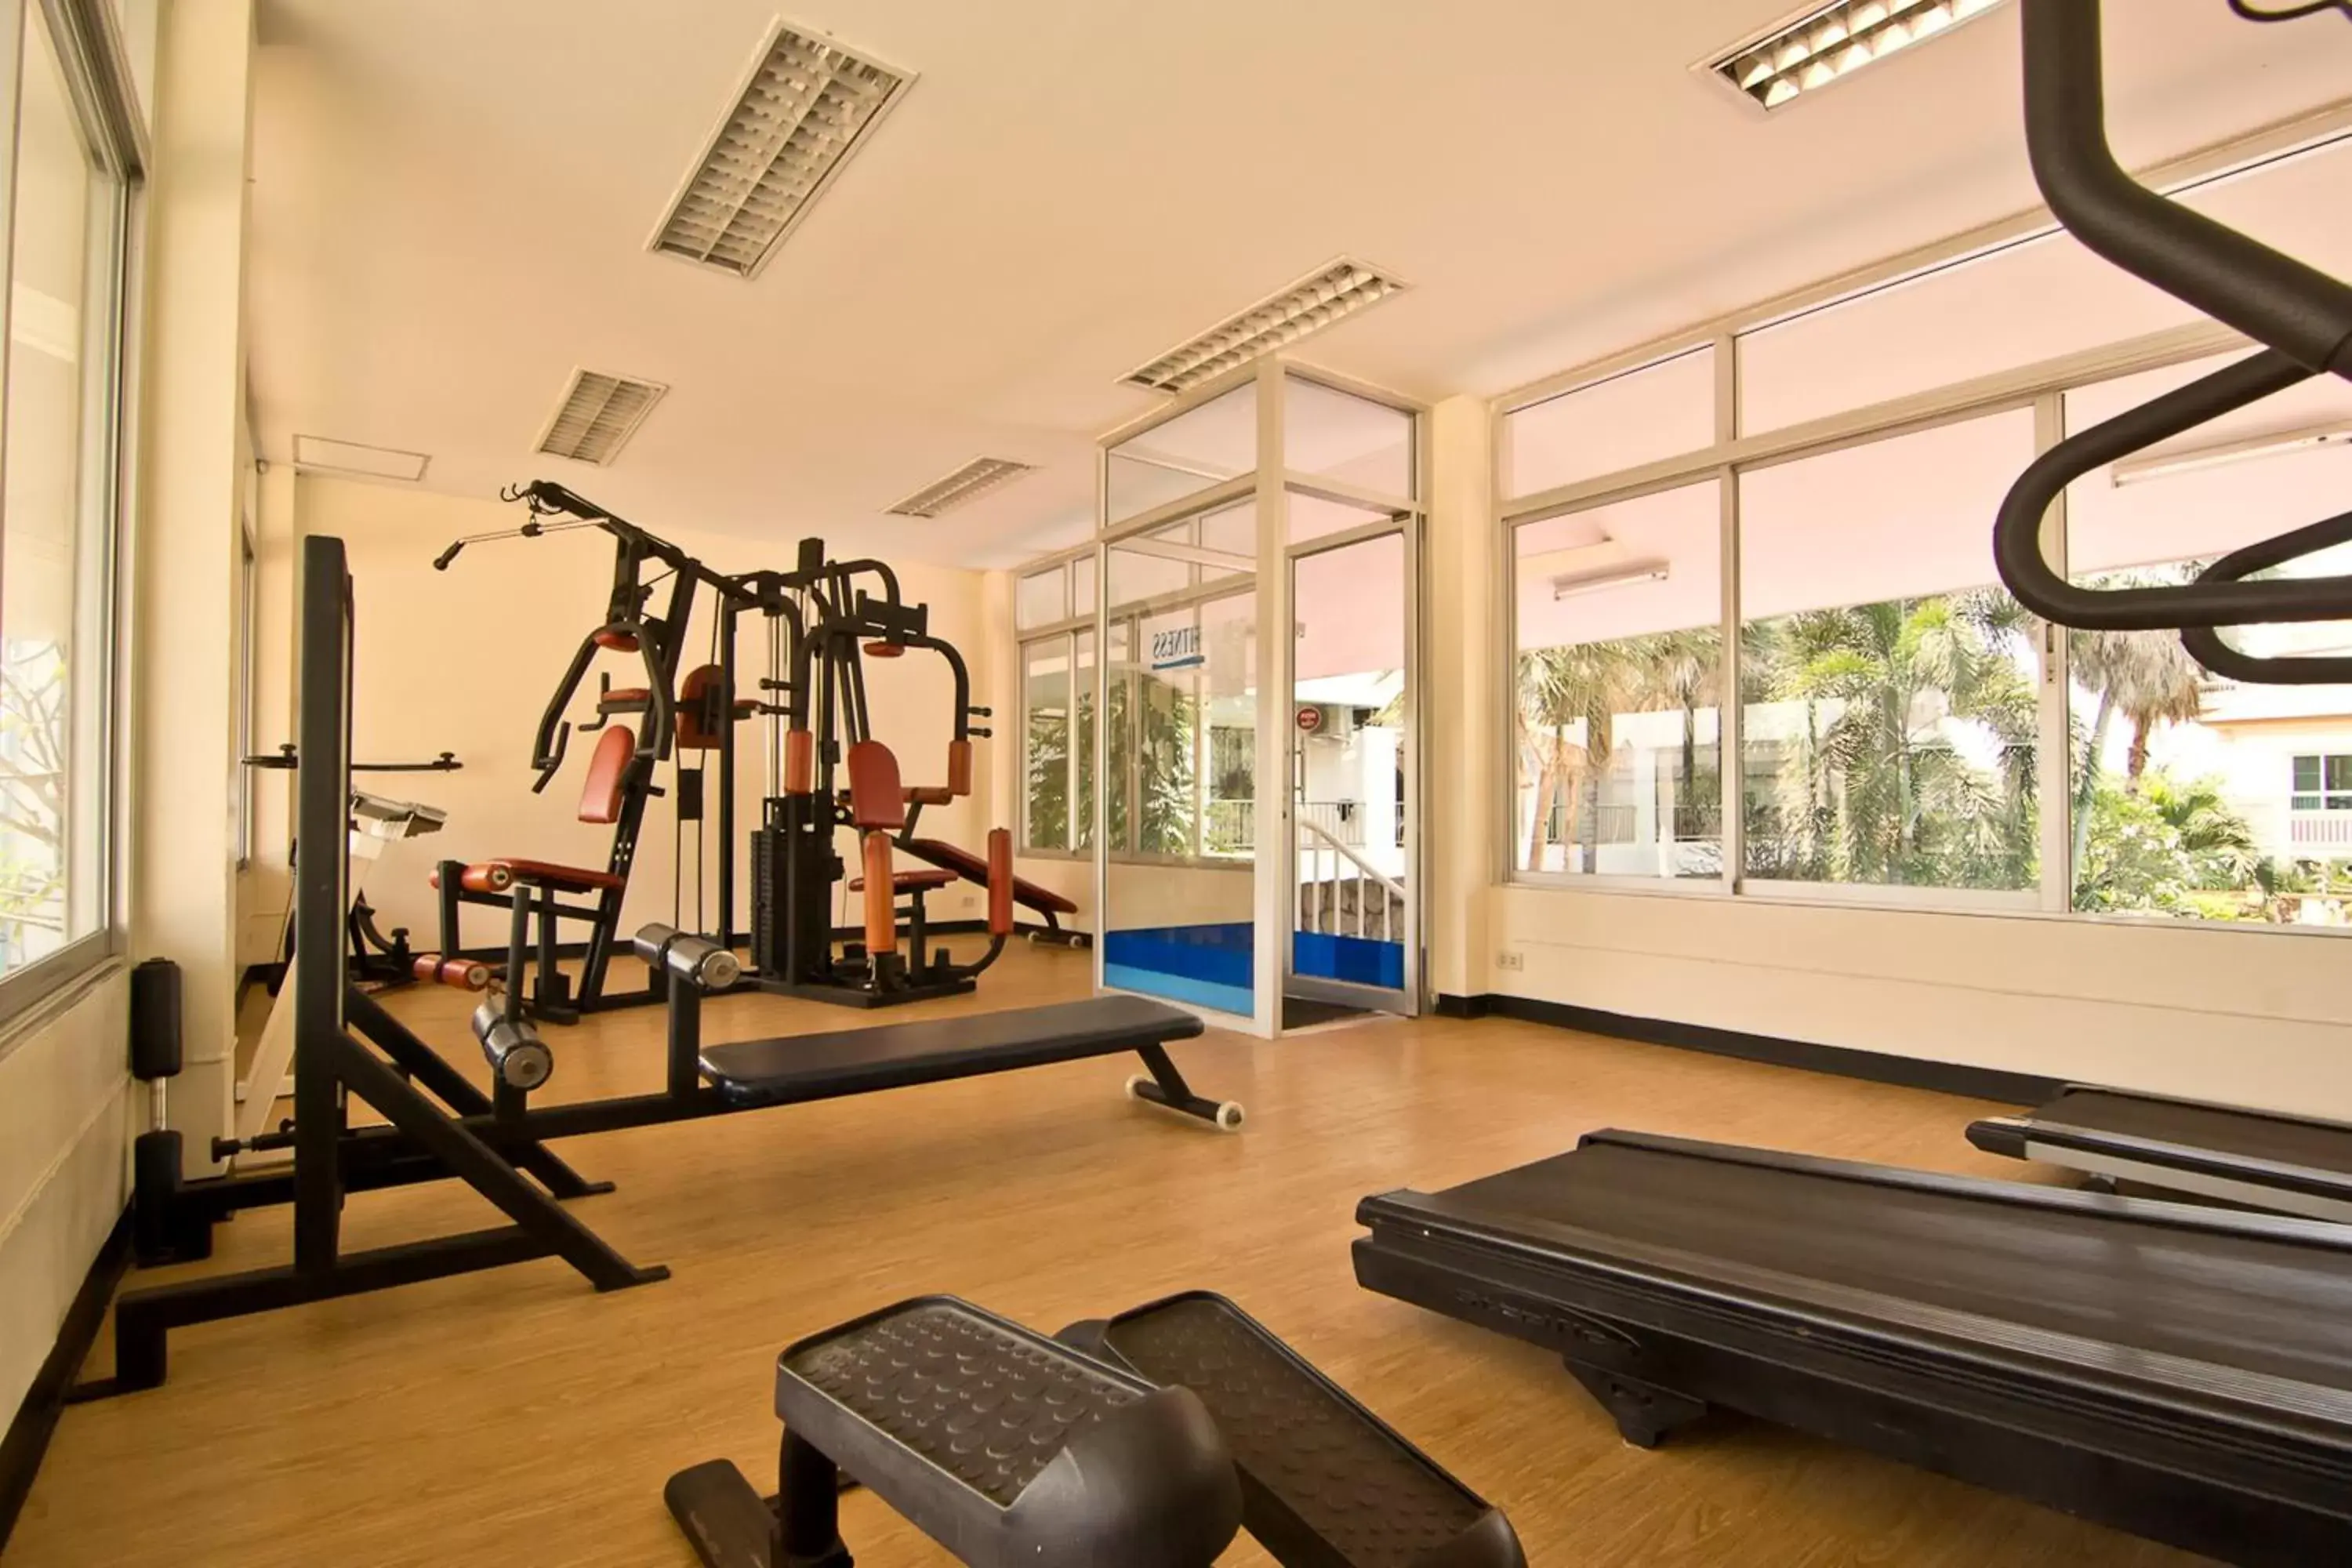 Fitness centre/facilities, Fitness Center/Facilities in Bella Villa Pattaya 3rd Road